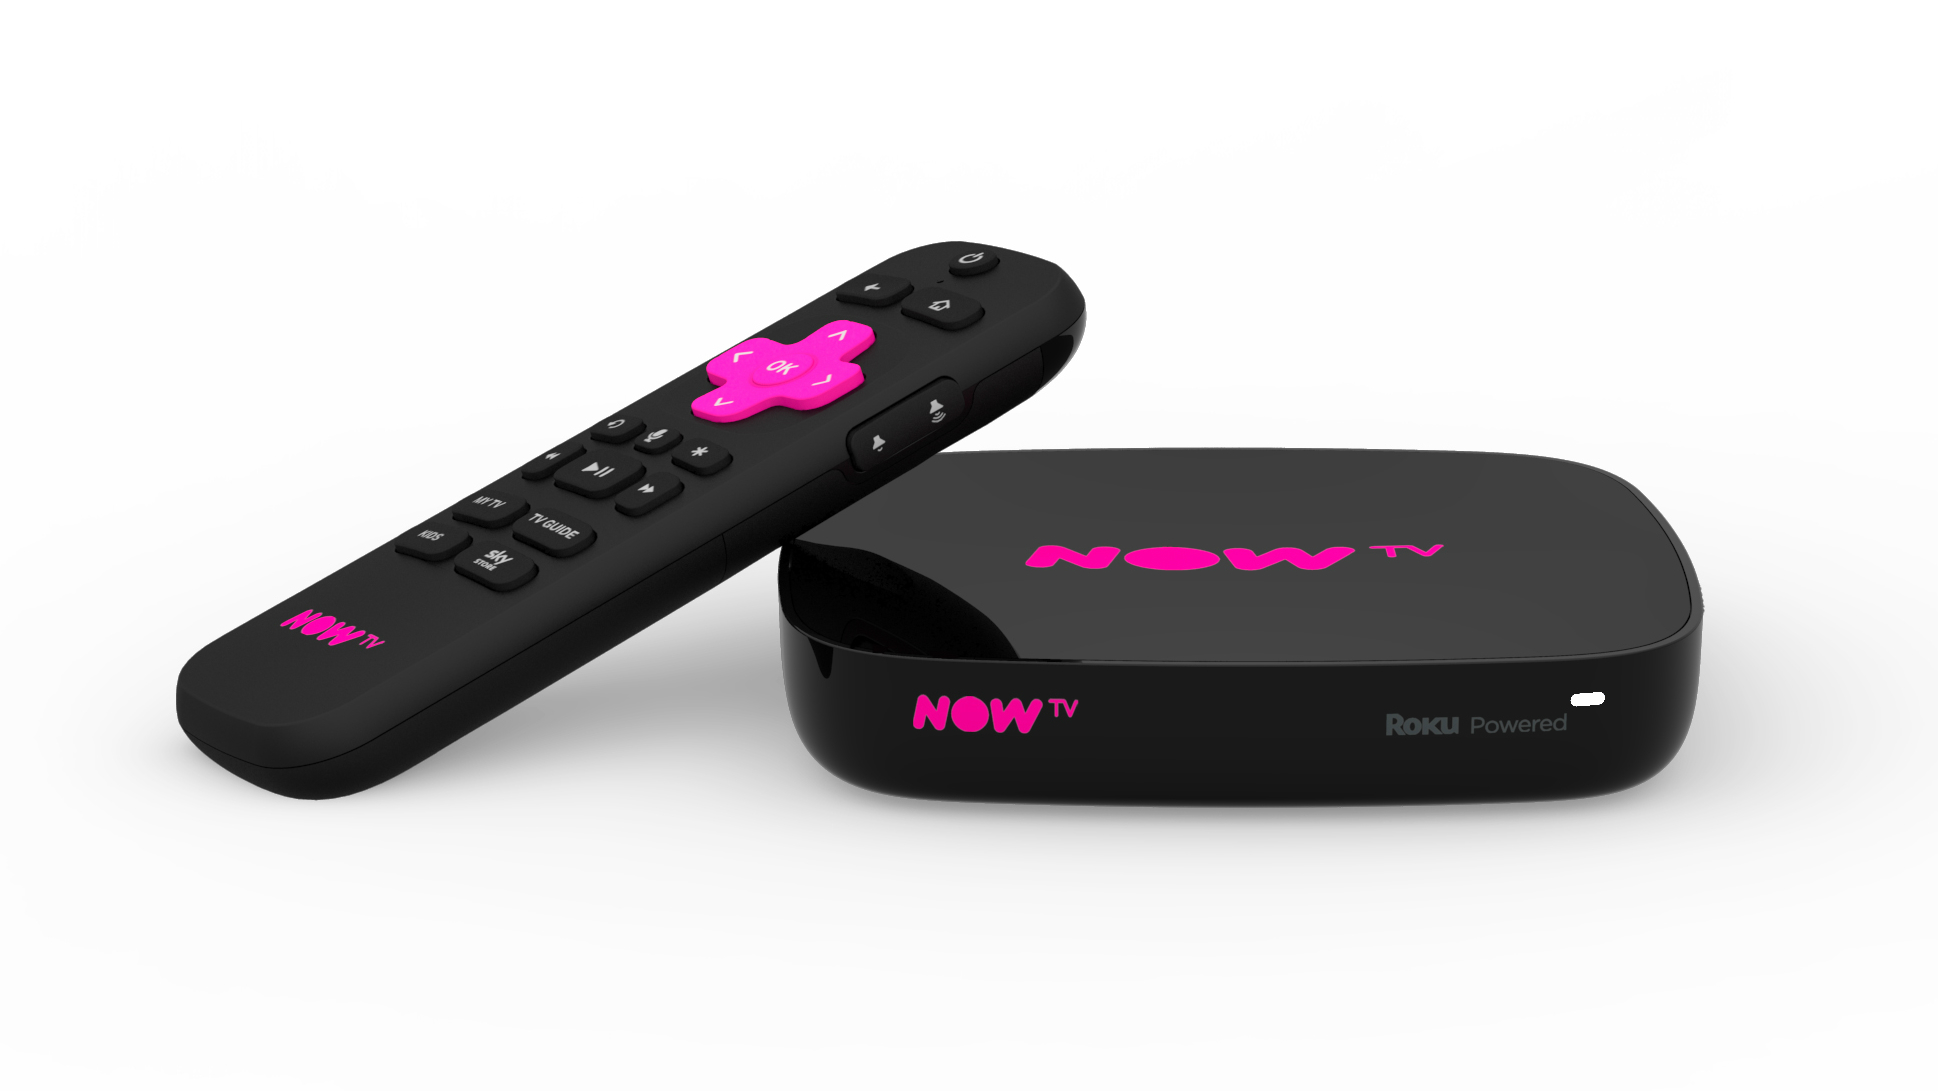 Sekarang TV Smart Box dengan 4K & Voice Search: New Now TV Box akan memiliki kemampuan 60fps dan HDR